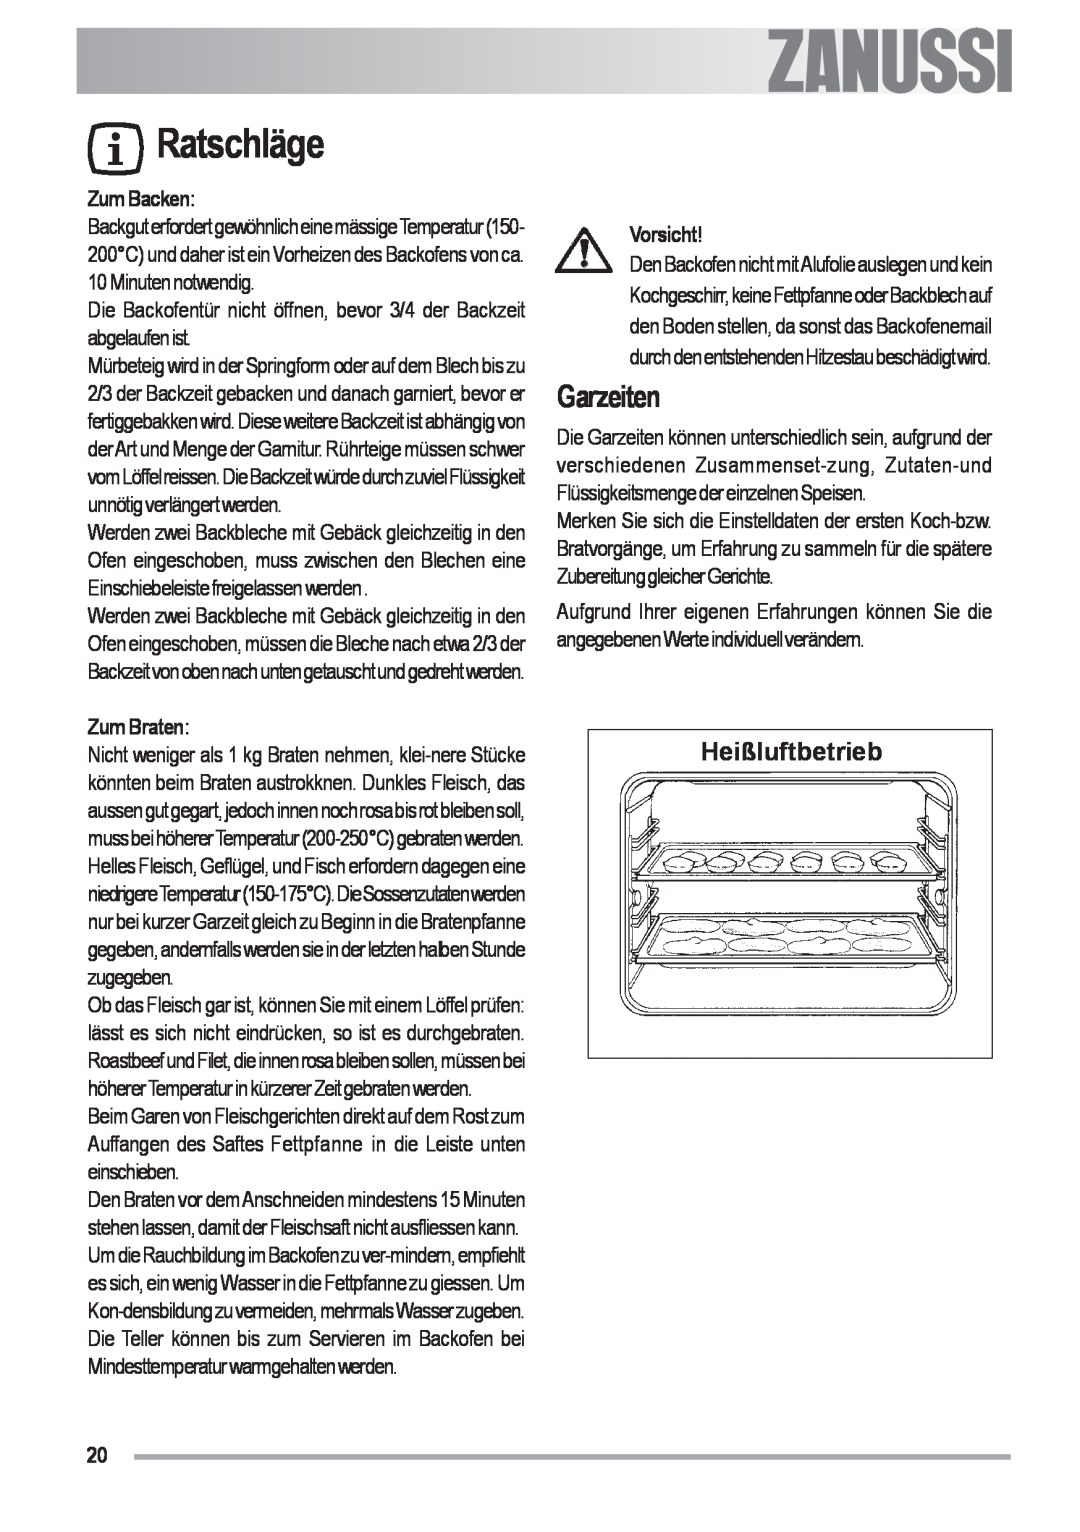 Zanussi ZOU 592 user manual Ratschläge, Garzeiten, Heißluftbetrieb, ZumBacken, Zum Braten, Vorsicht, Electrolux 